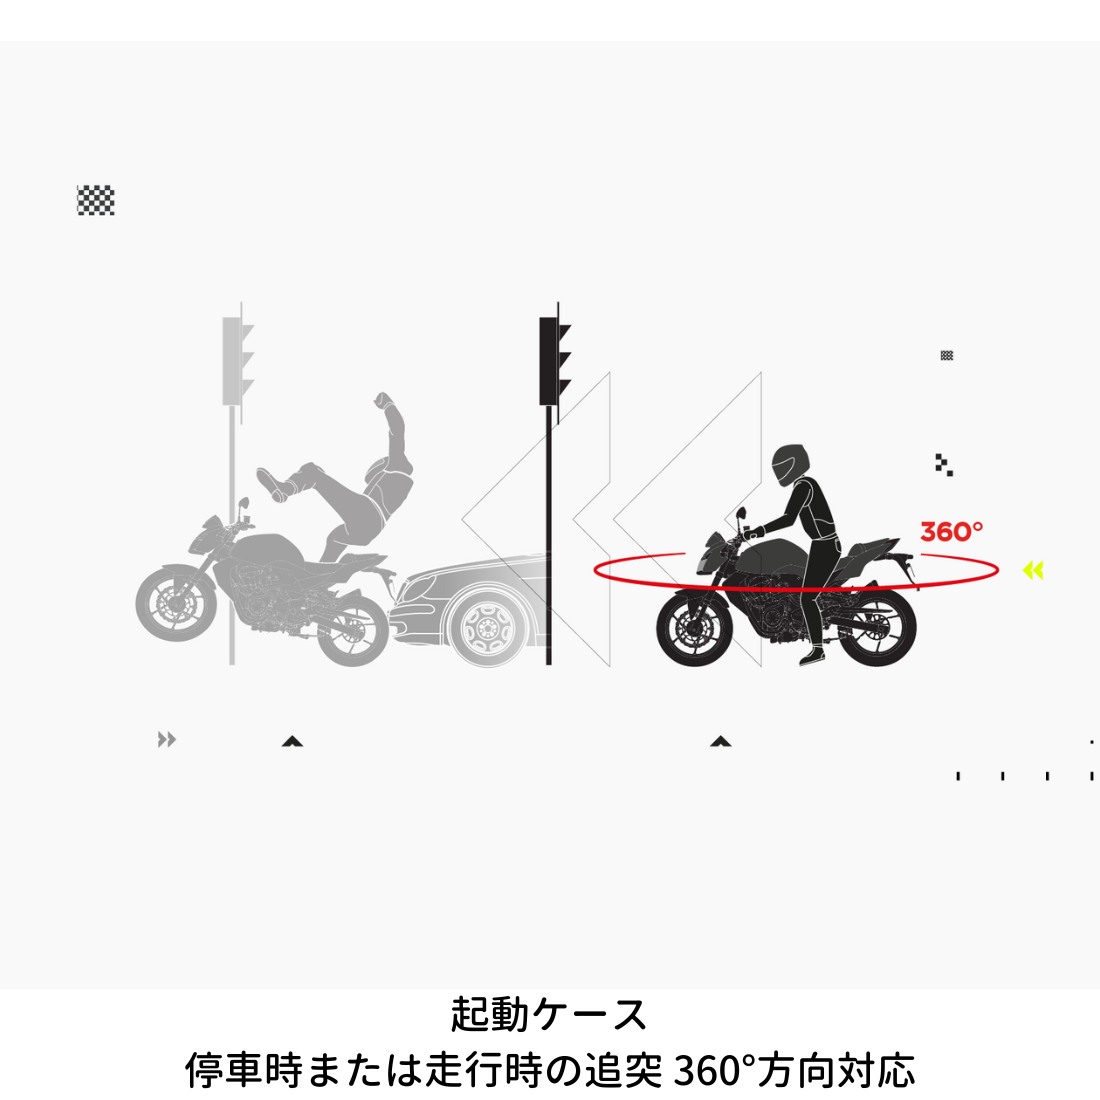 バイク専用エアバッグシステムの起動シーン